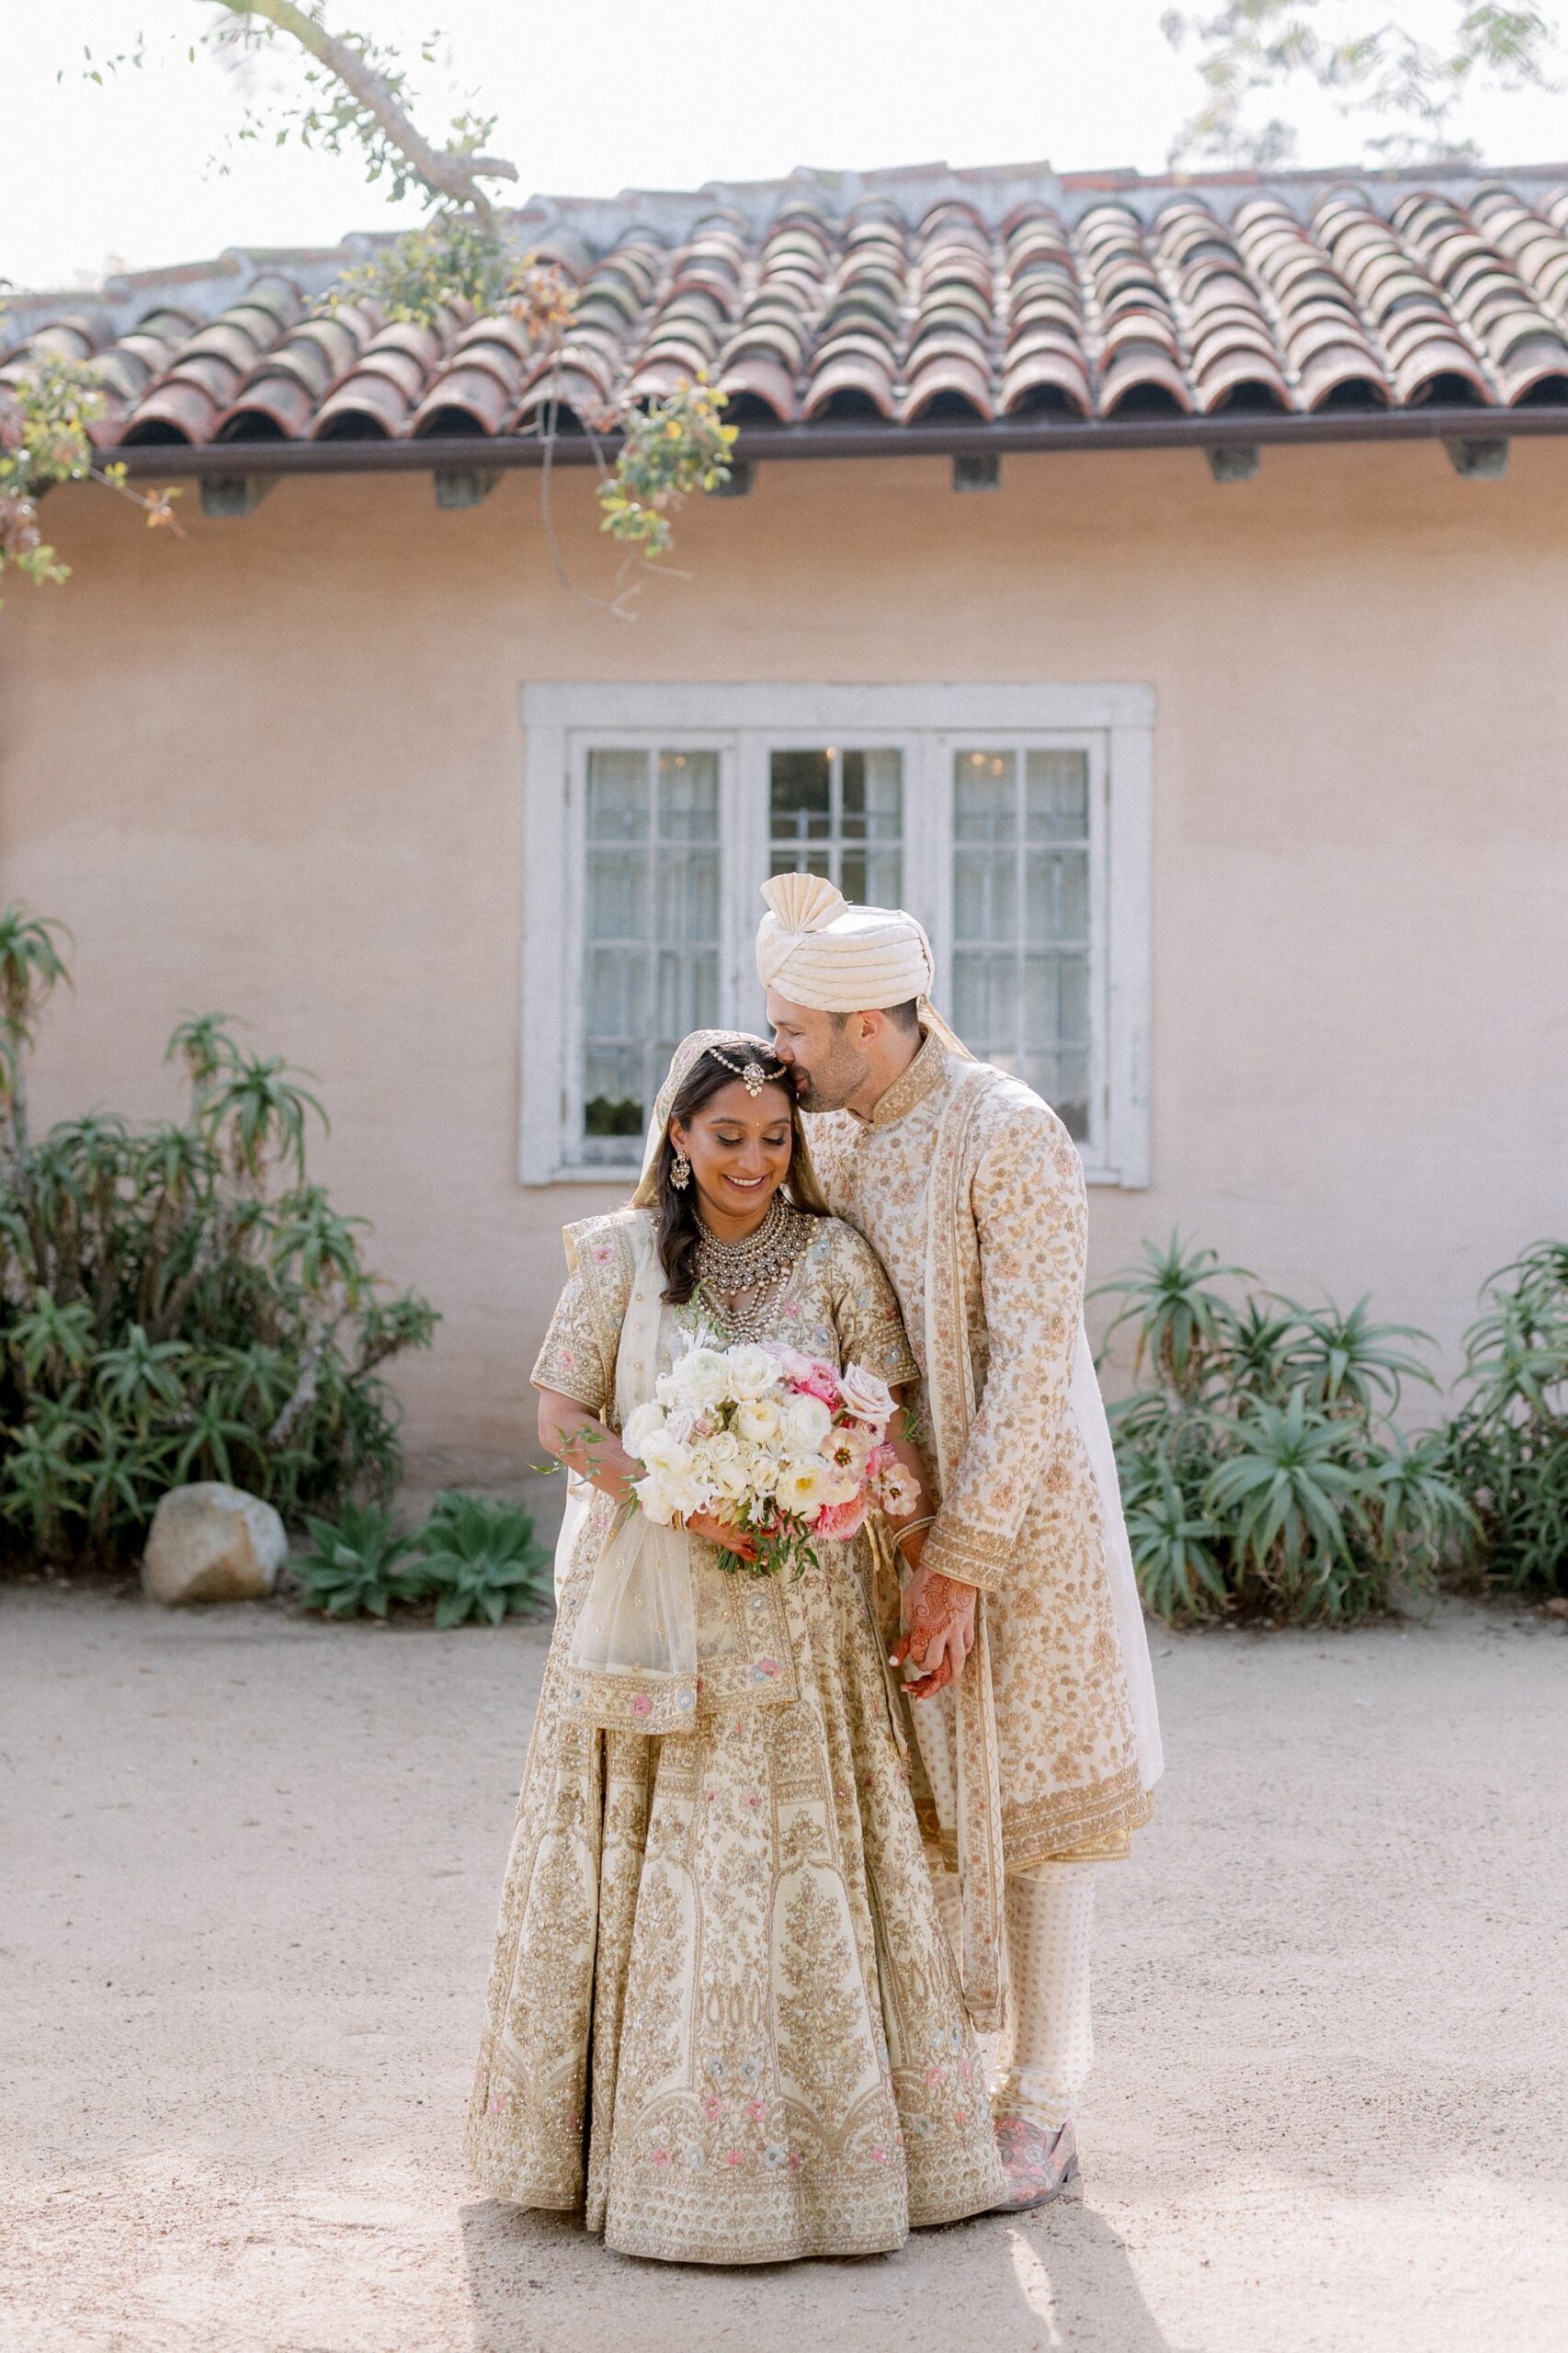 Indian wedding at Santa Barbara Historical Museum